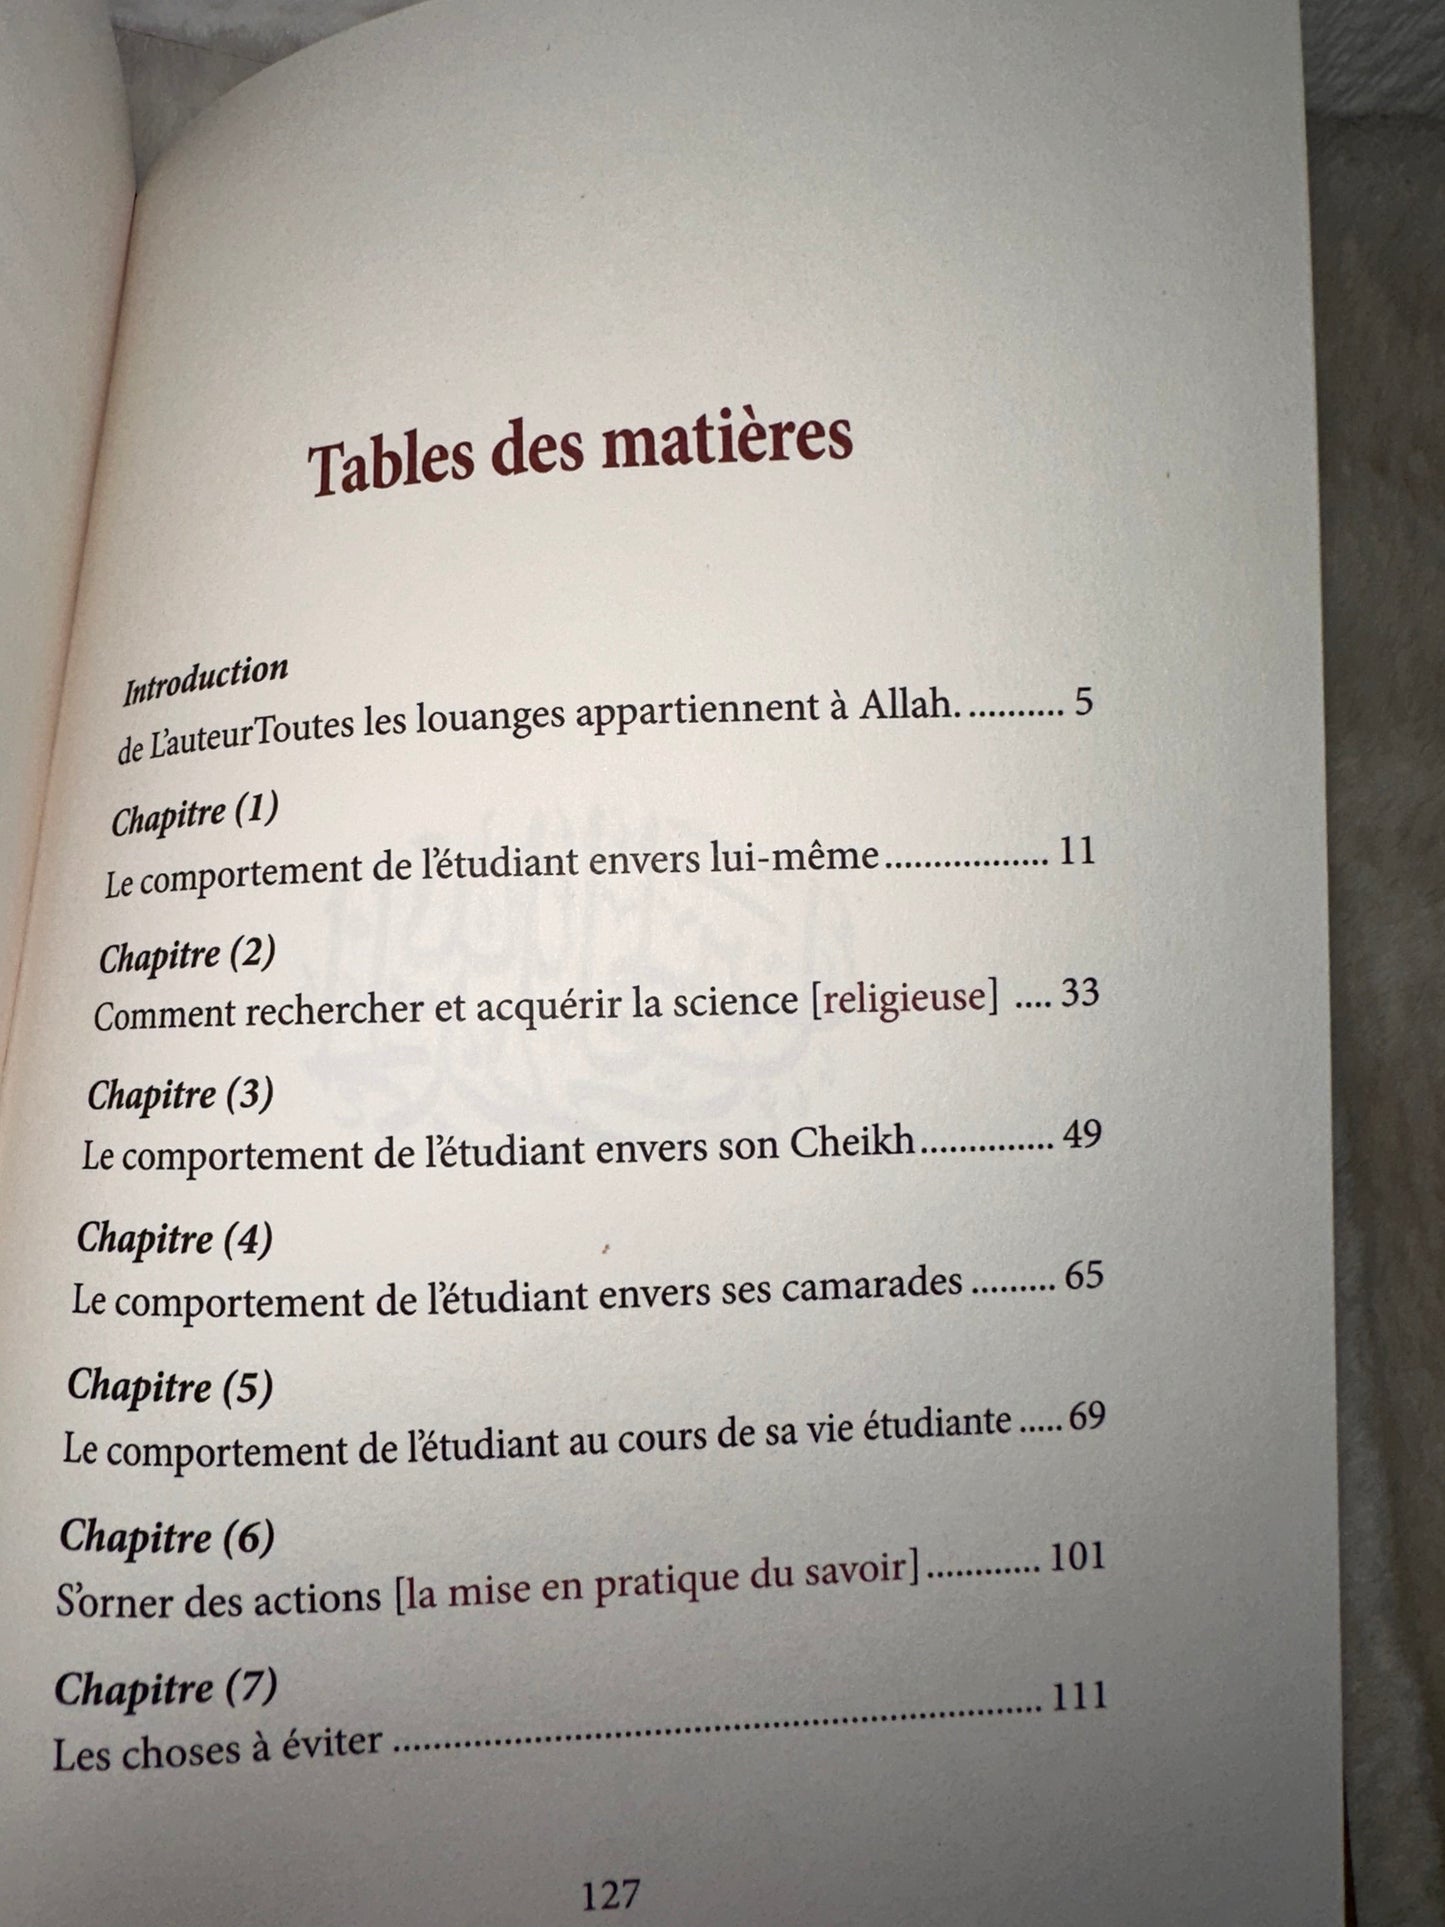 La Parure De L' Étudiant En Science Religieuse D'après Bakr Abou Zayd - 3 Eme Éditions